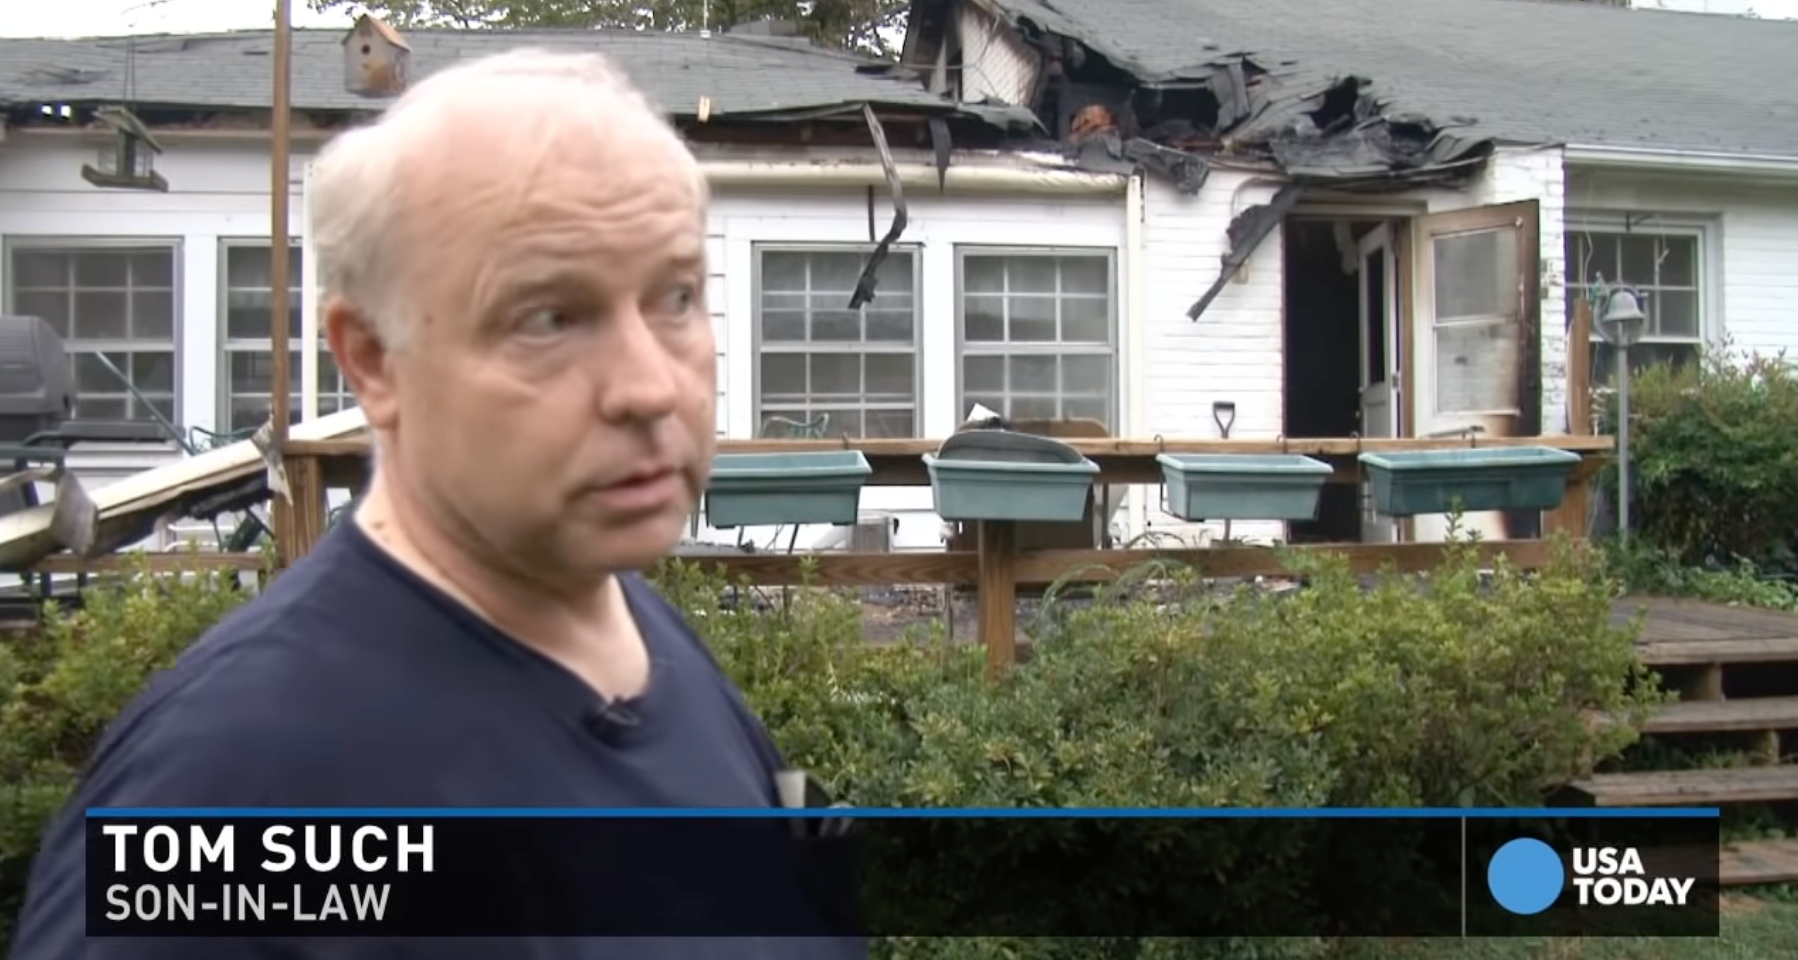 Una captura de pantalla del yerno de la pareja, Tom Such, hablando sobre el incidente en una noticia sobre el incendio de la casa de Arthur y Rosemary Schneider en 2015. | Foto: youtube.com/@USATODAY